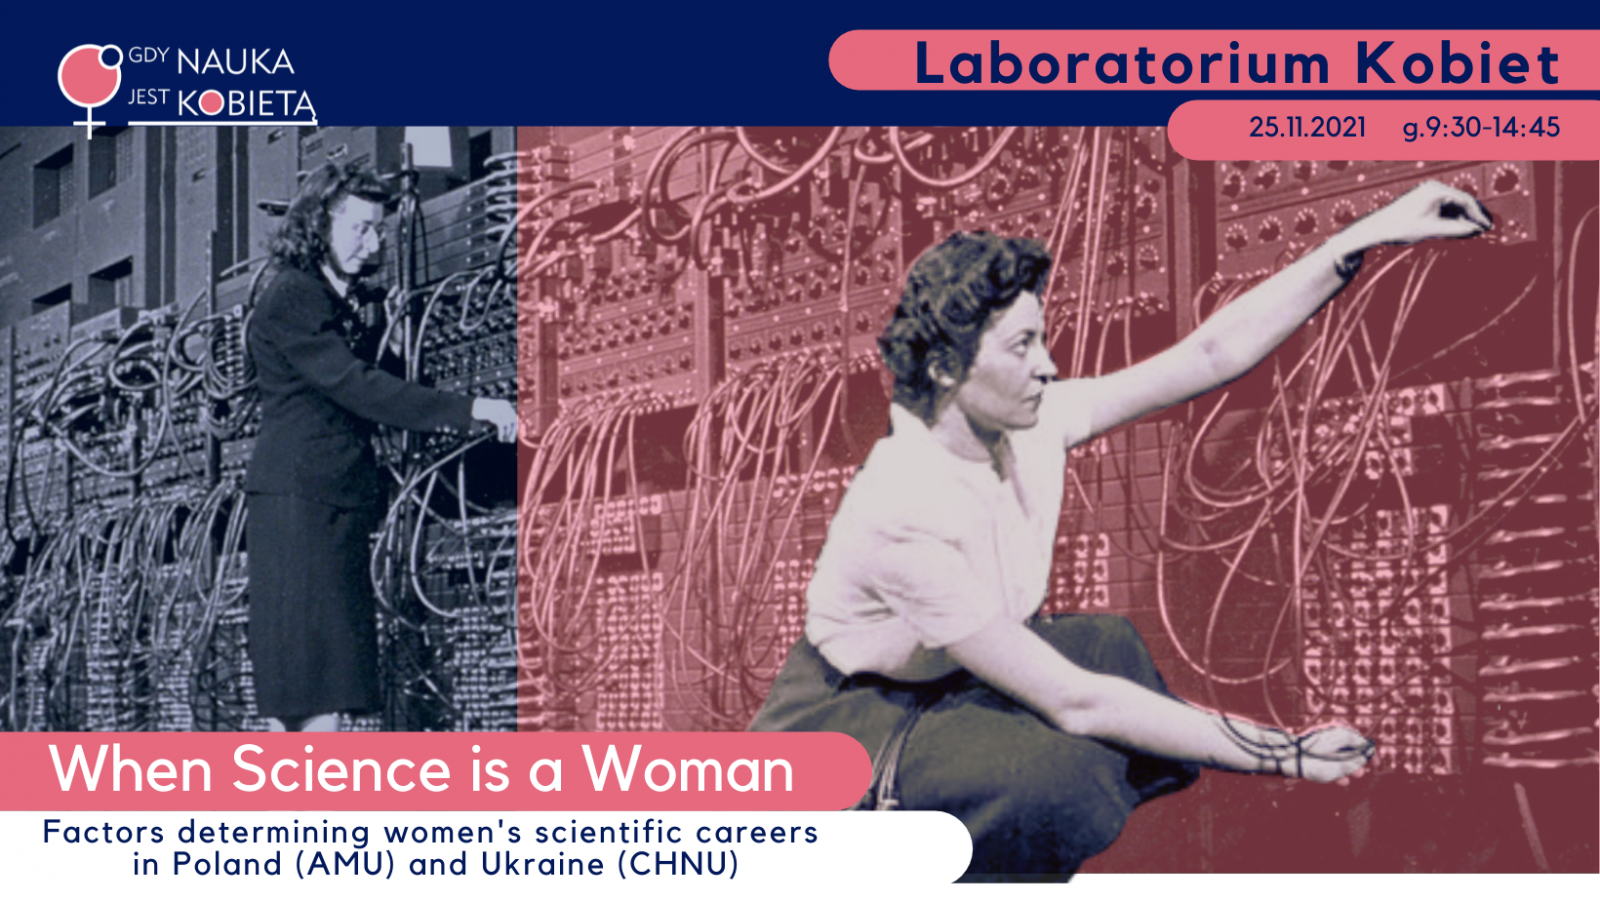 Plakat IV laboratorium kobiet, gdy nauka jest kobietą. Na plakacie widać dwie telefonistki obsługujące centralę telefoniczną. W lewym dolnym rogu znajduje się napis 